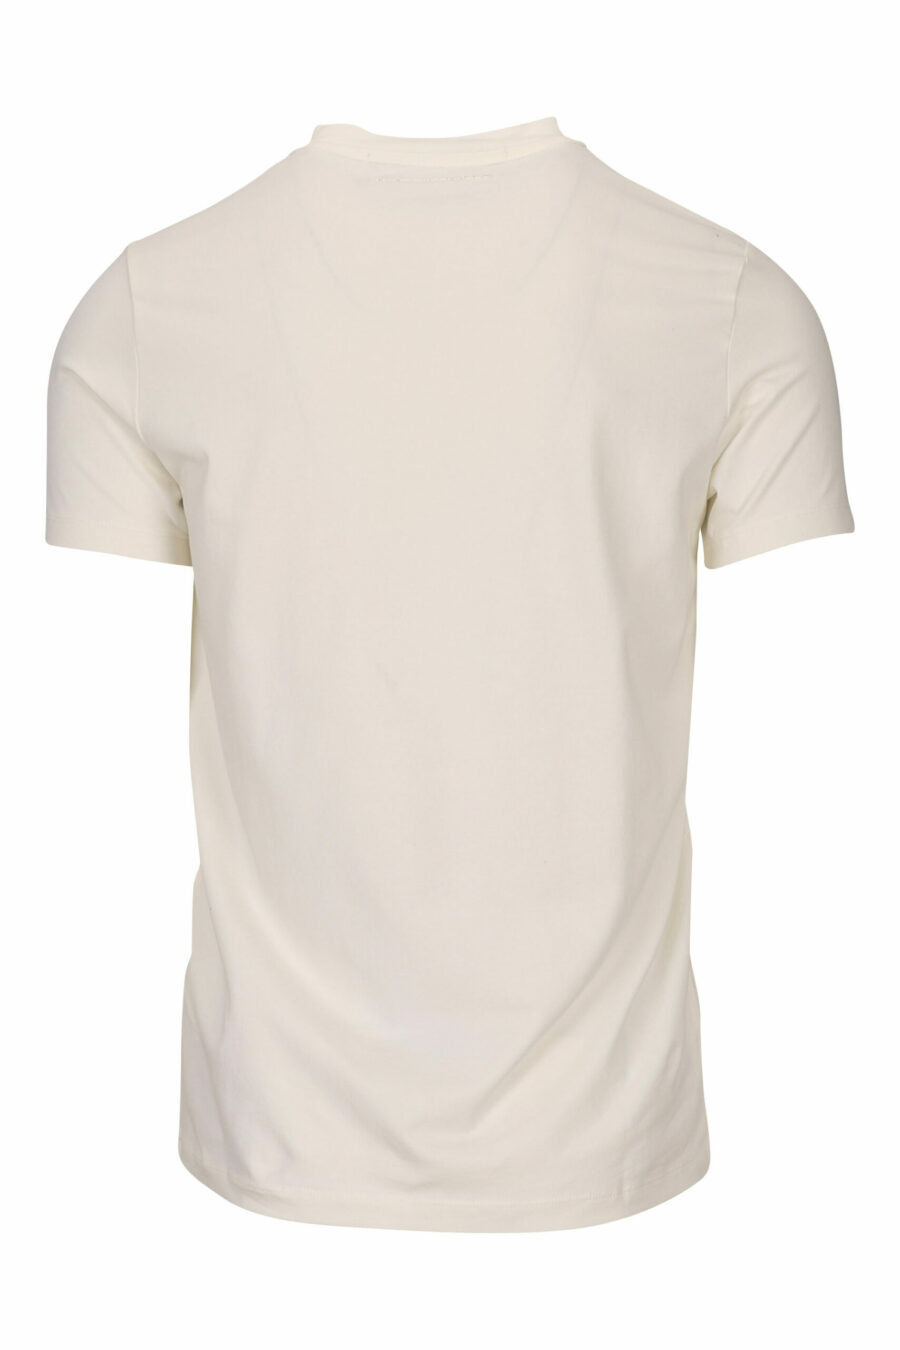 T-shirt blanc avec maxilogo monochrome "rue st guillaume" - 4062226678124 1 échelle